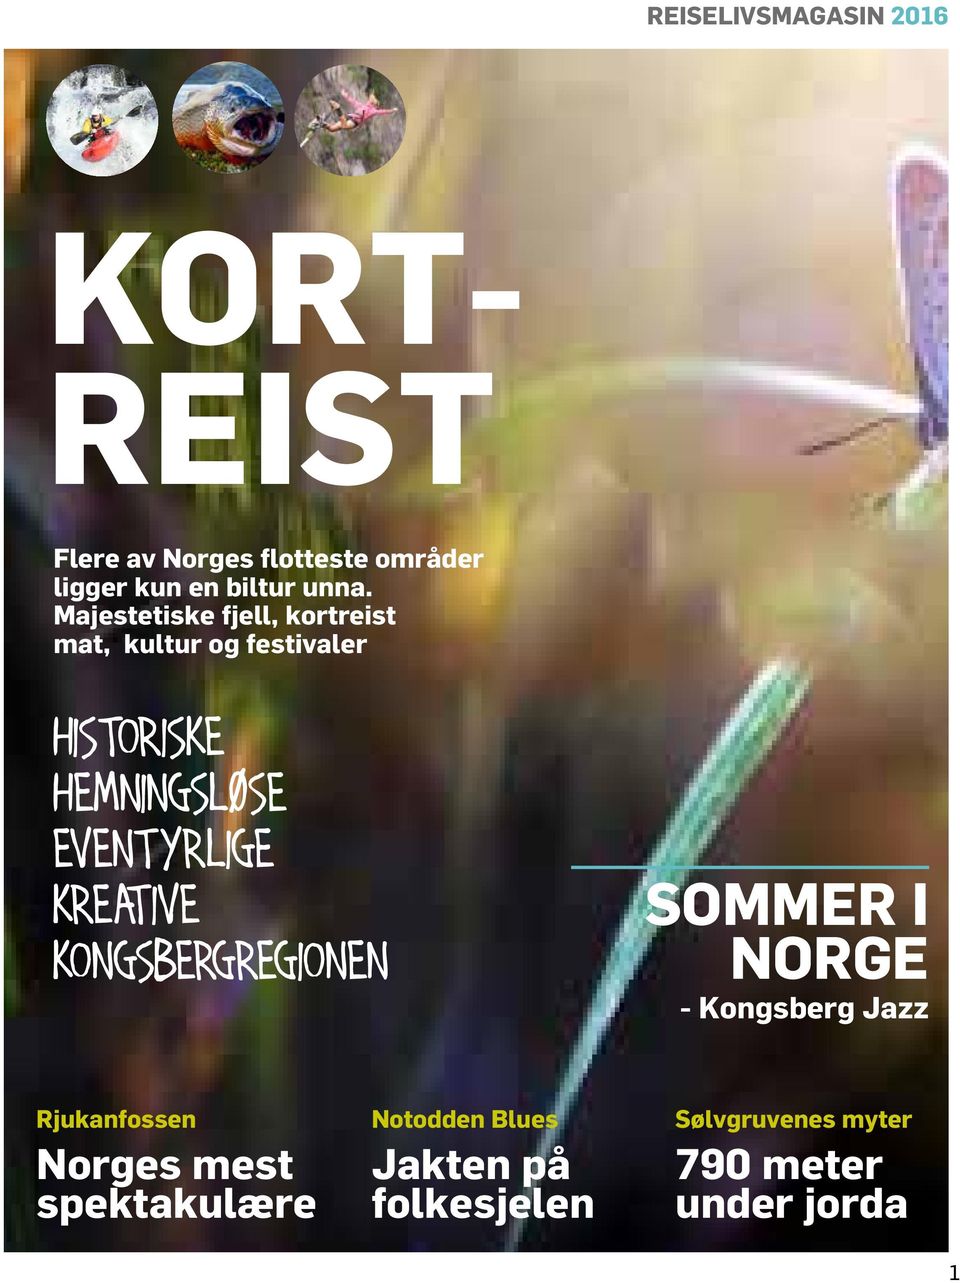 EVENTYRLIGE KREATIVE KONGSBERGREGIONEN SOMMER I NORGE - Kongsberg Jazz Rjukanfossen Norges